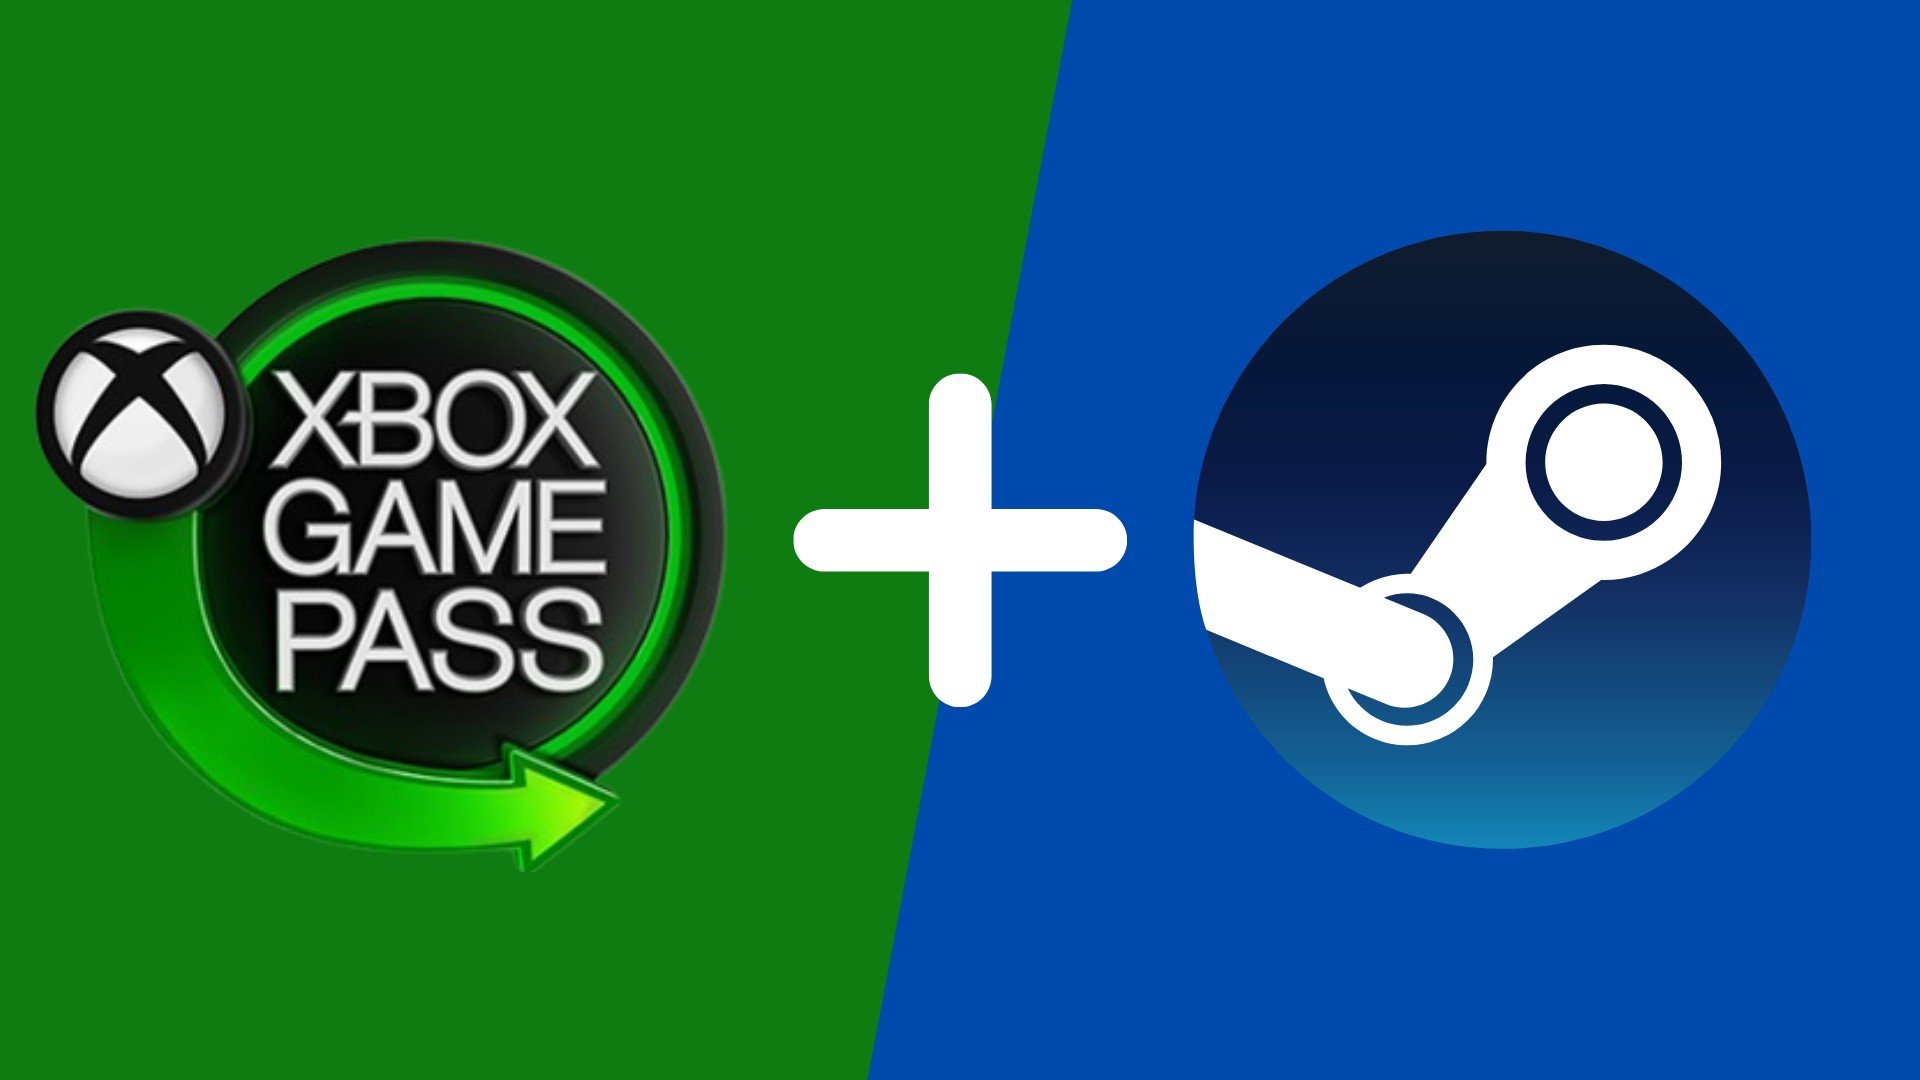 Valve-Steam-Uzerinden-Xbox-Game-Pass-Fikrine-Olumlu-Bakiyor.jpg